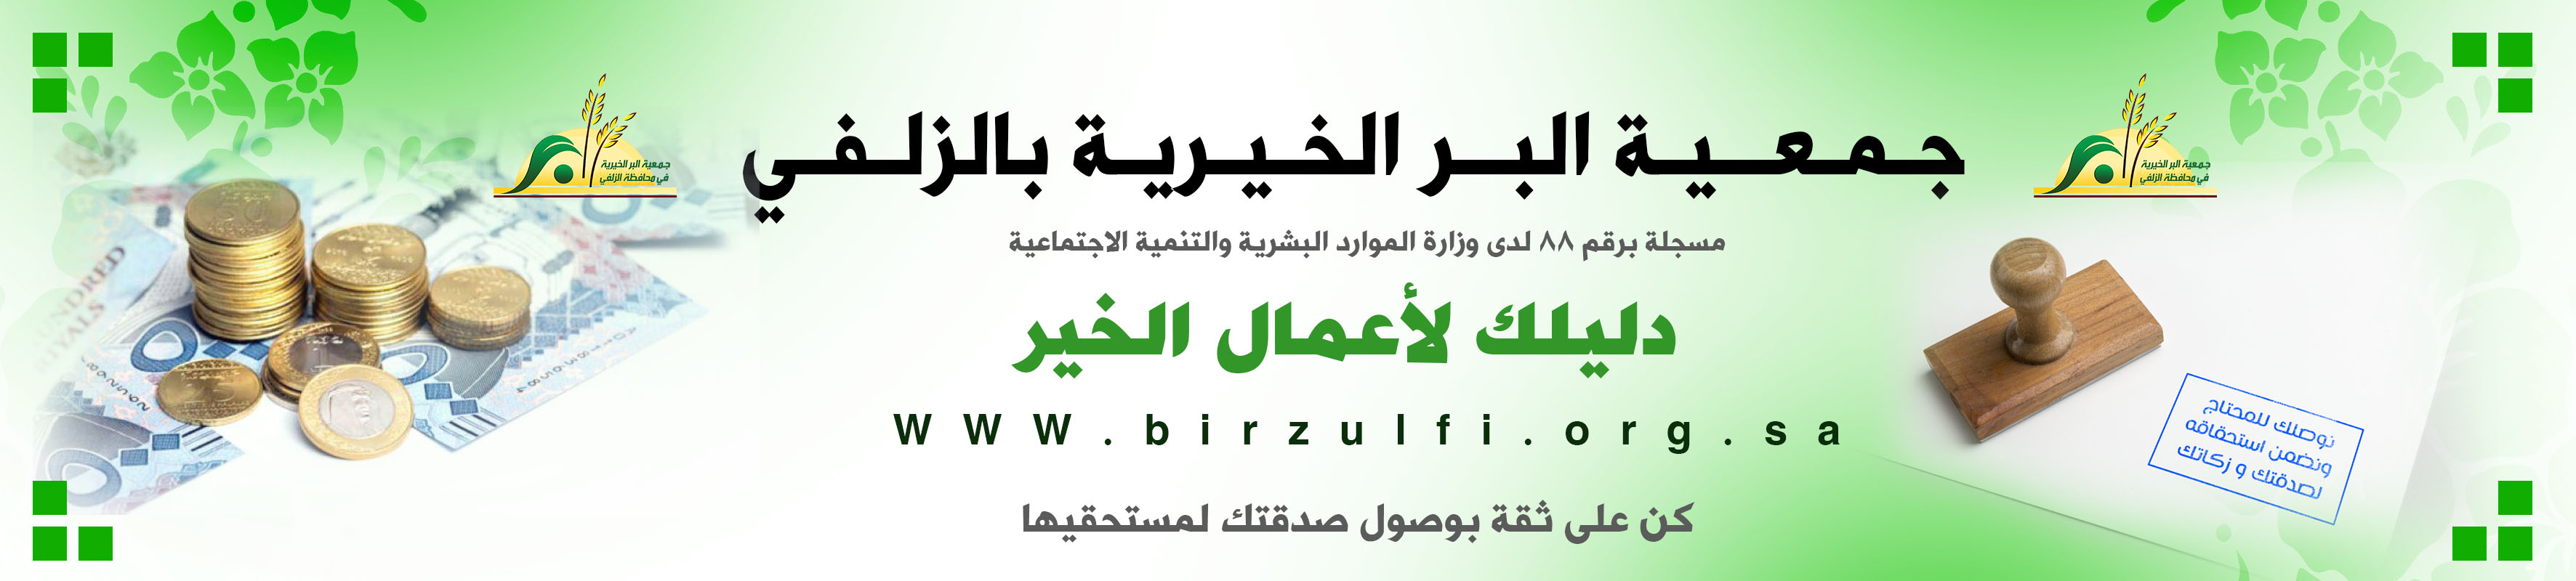 جمعية البر الخيرية في محافظة الزلفي